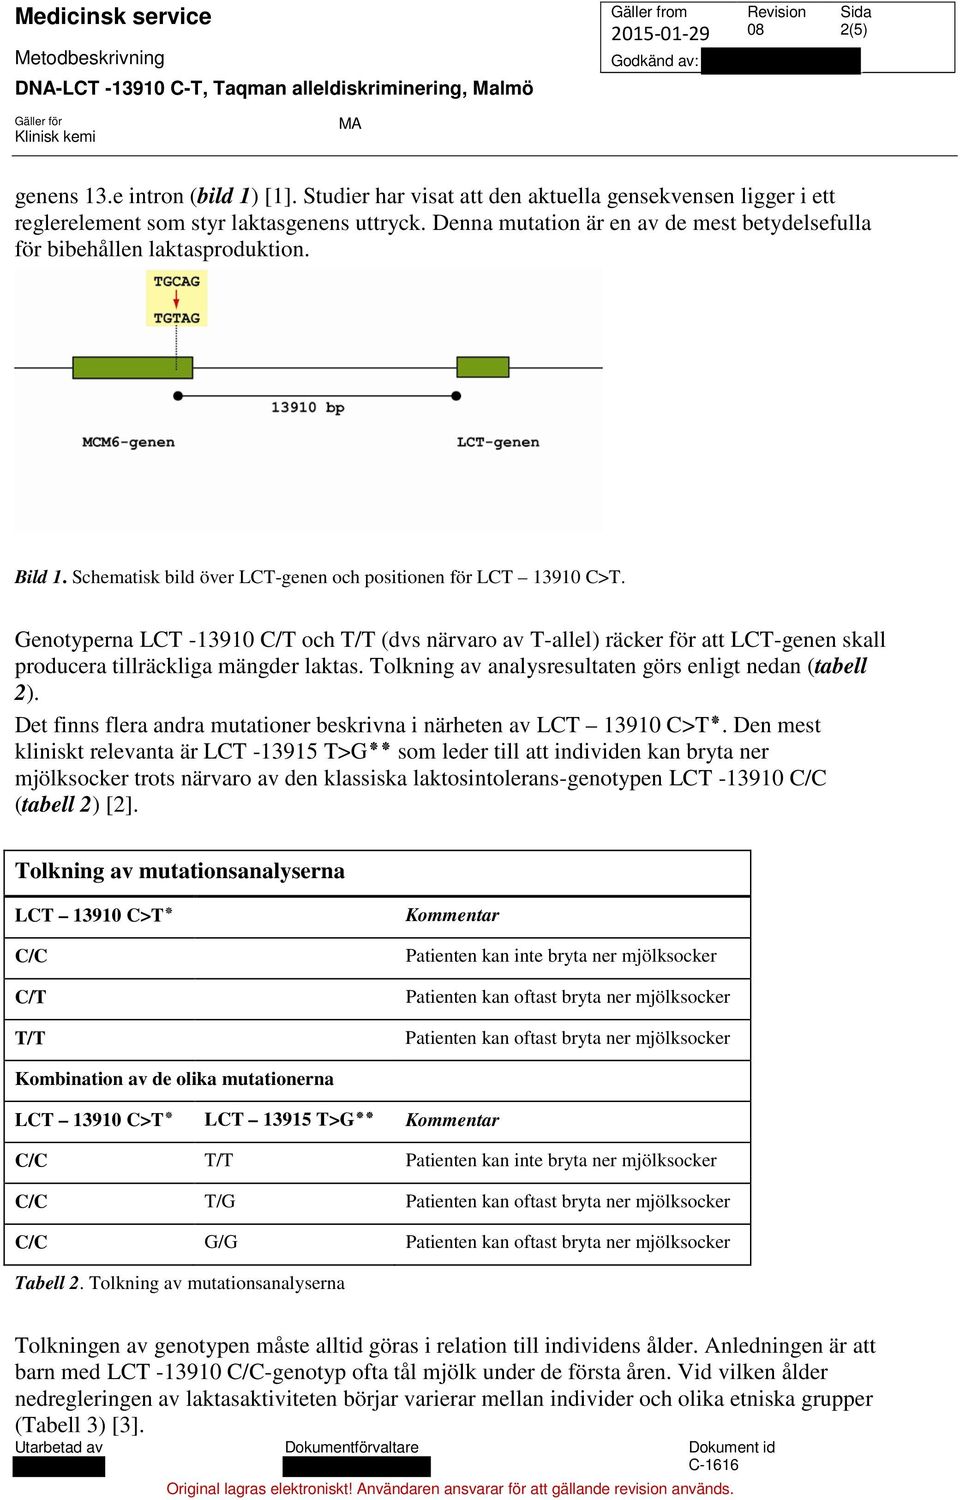 Genotyperna LCT -13910 C/T och T/T (dvs närvaro av T-allel) räcker för att LCT-genen skall producera tillräckliga mängder laktas. Tolkning av analysresultaten görs enligt nedan (tabell 2).